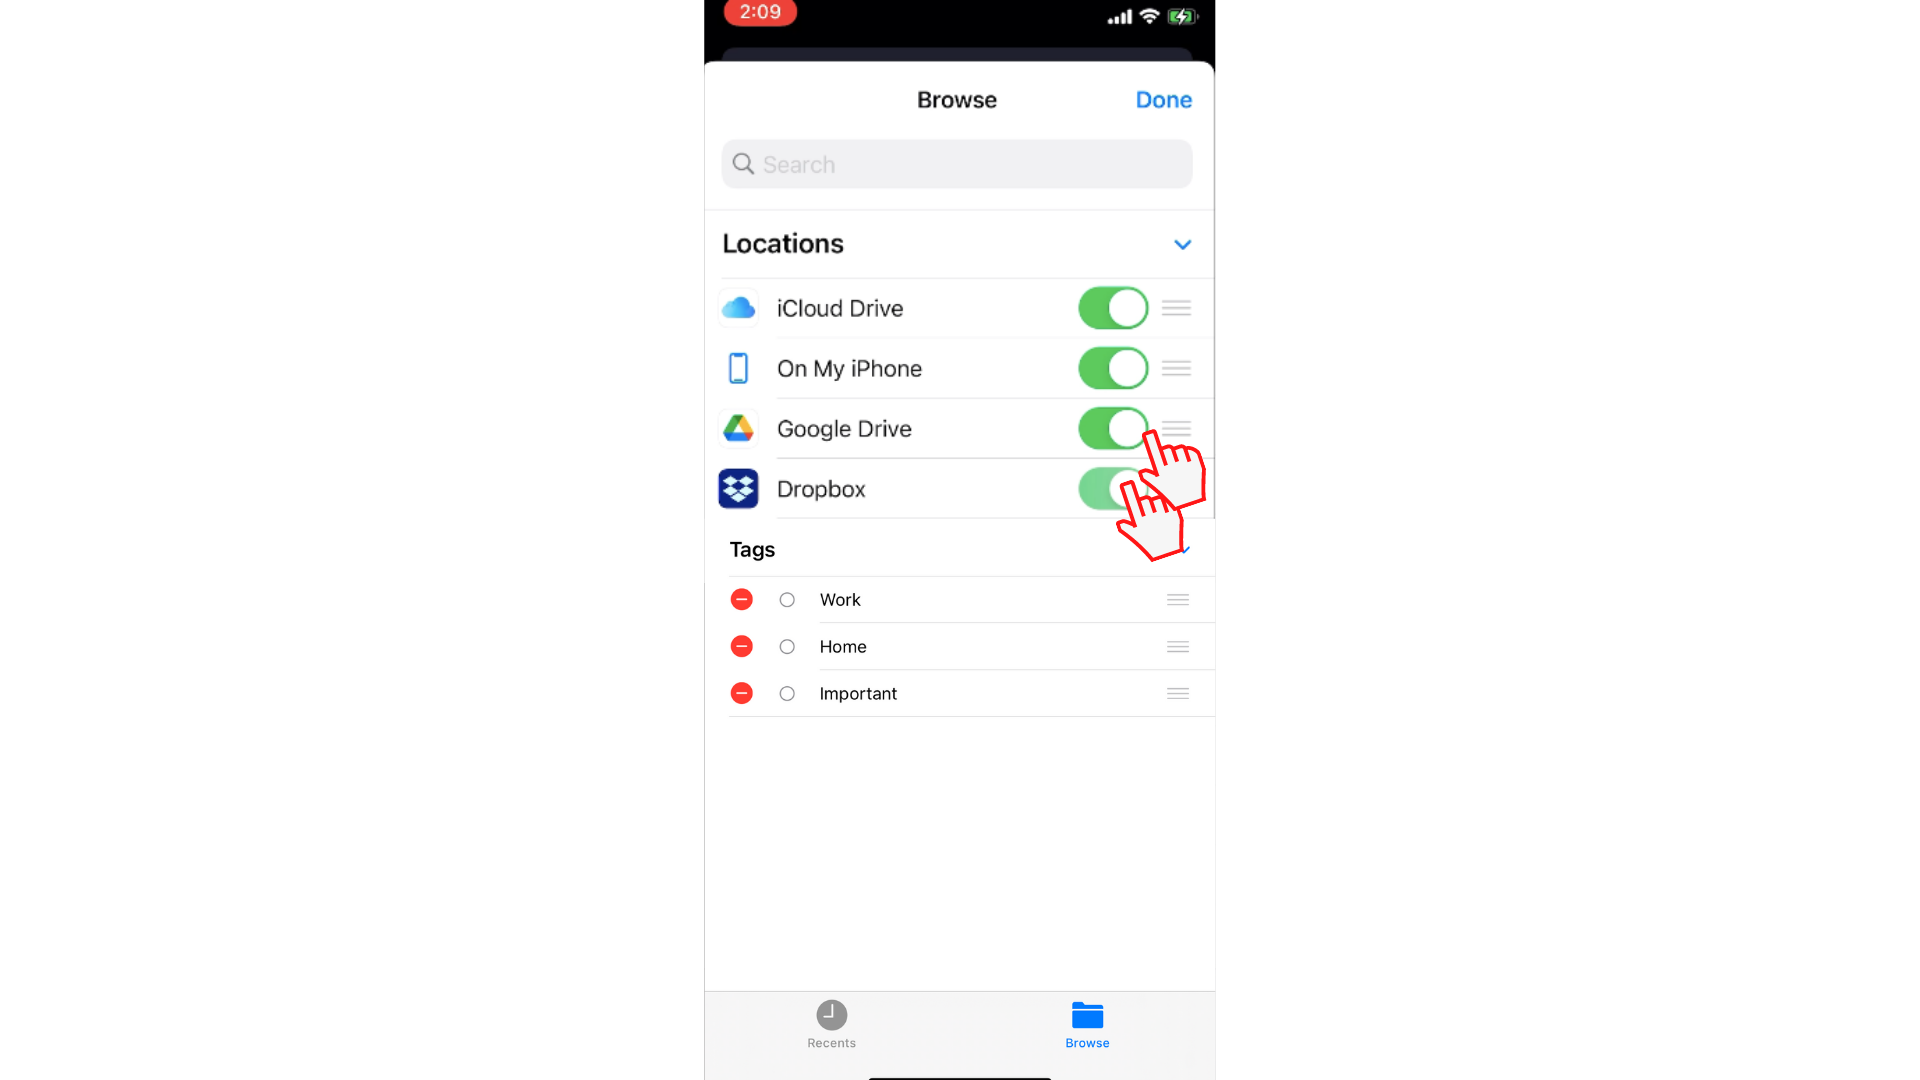 Ο χρήστης που ολισθαίνει το κουμπί εναλλαγής για να επιτρέψει την πρόσβαση στο Dropbox και το Google Drive